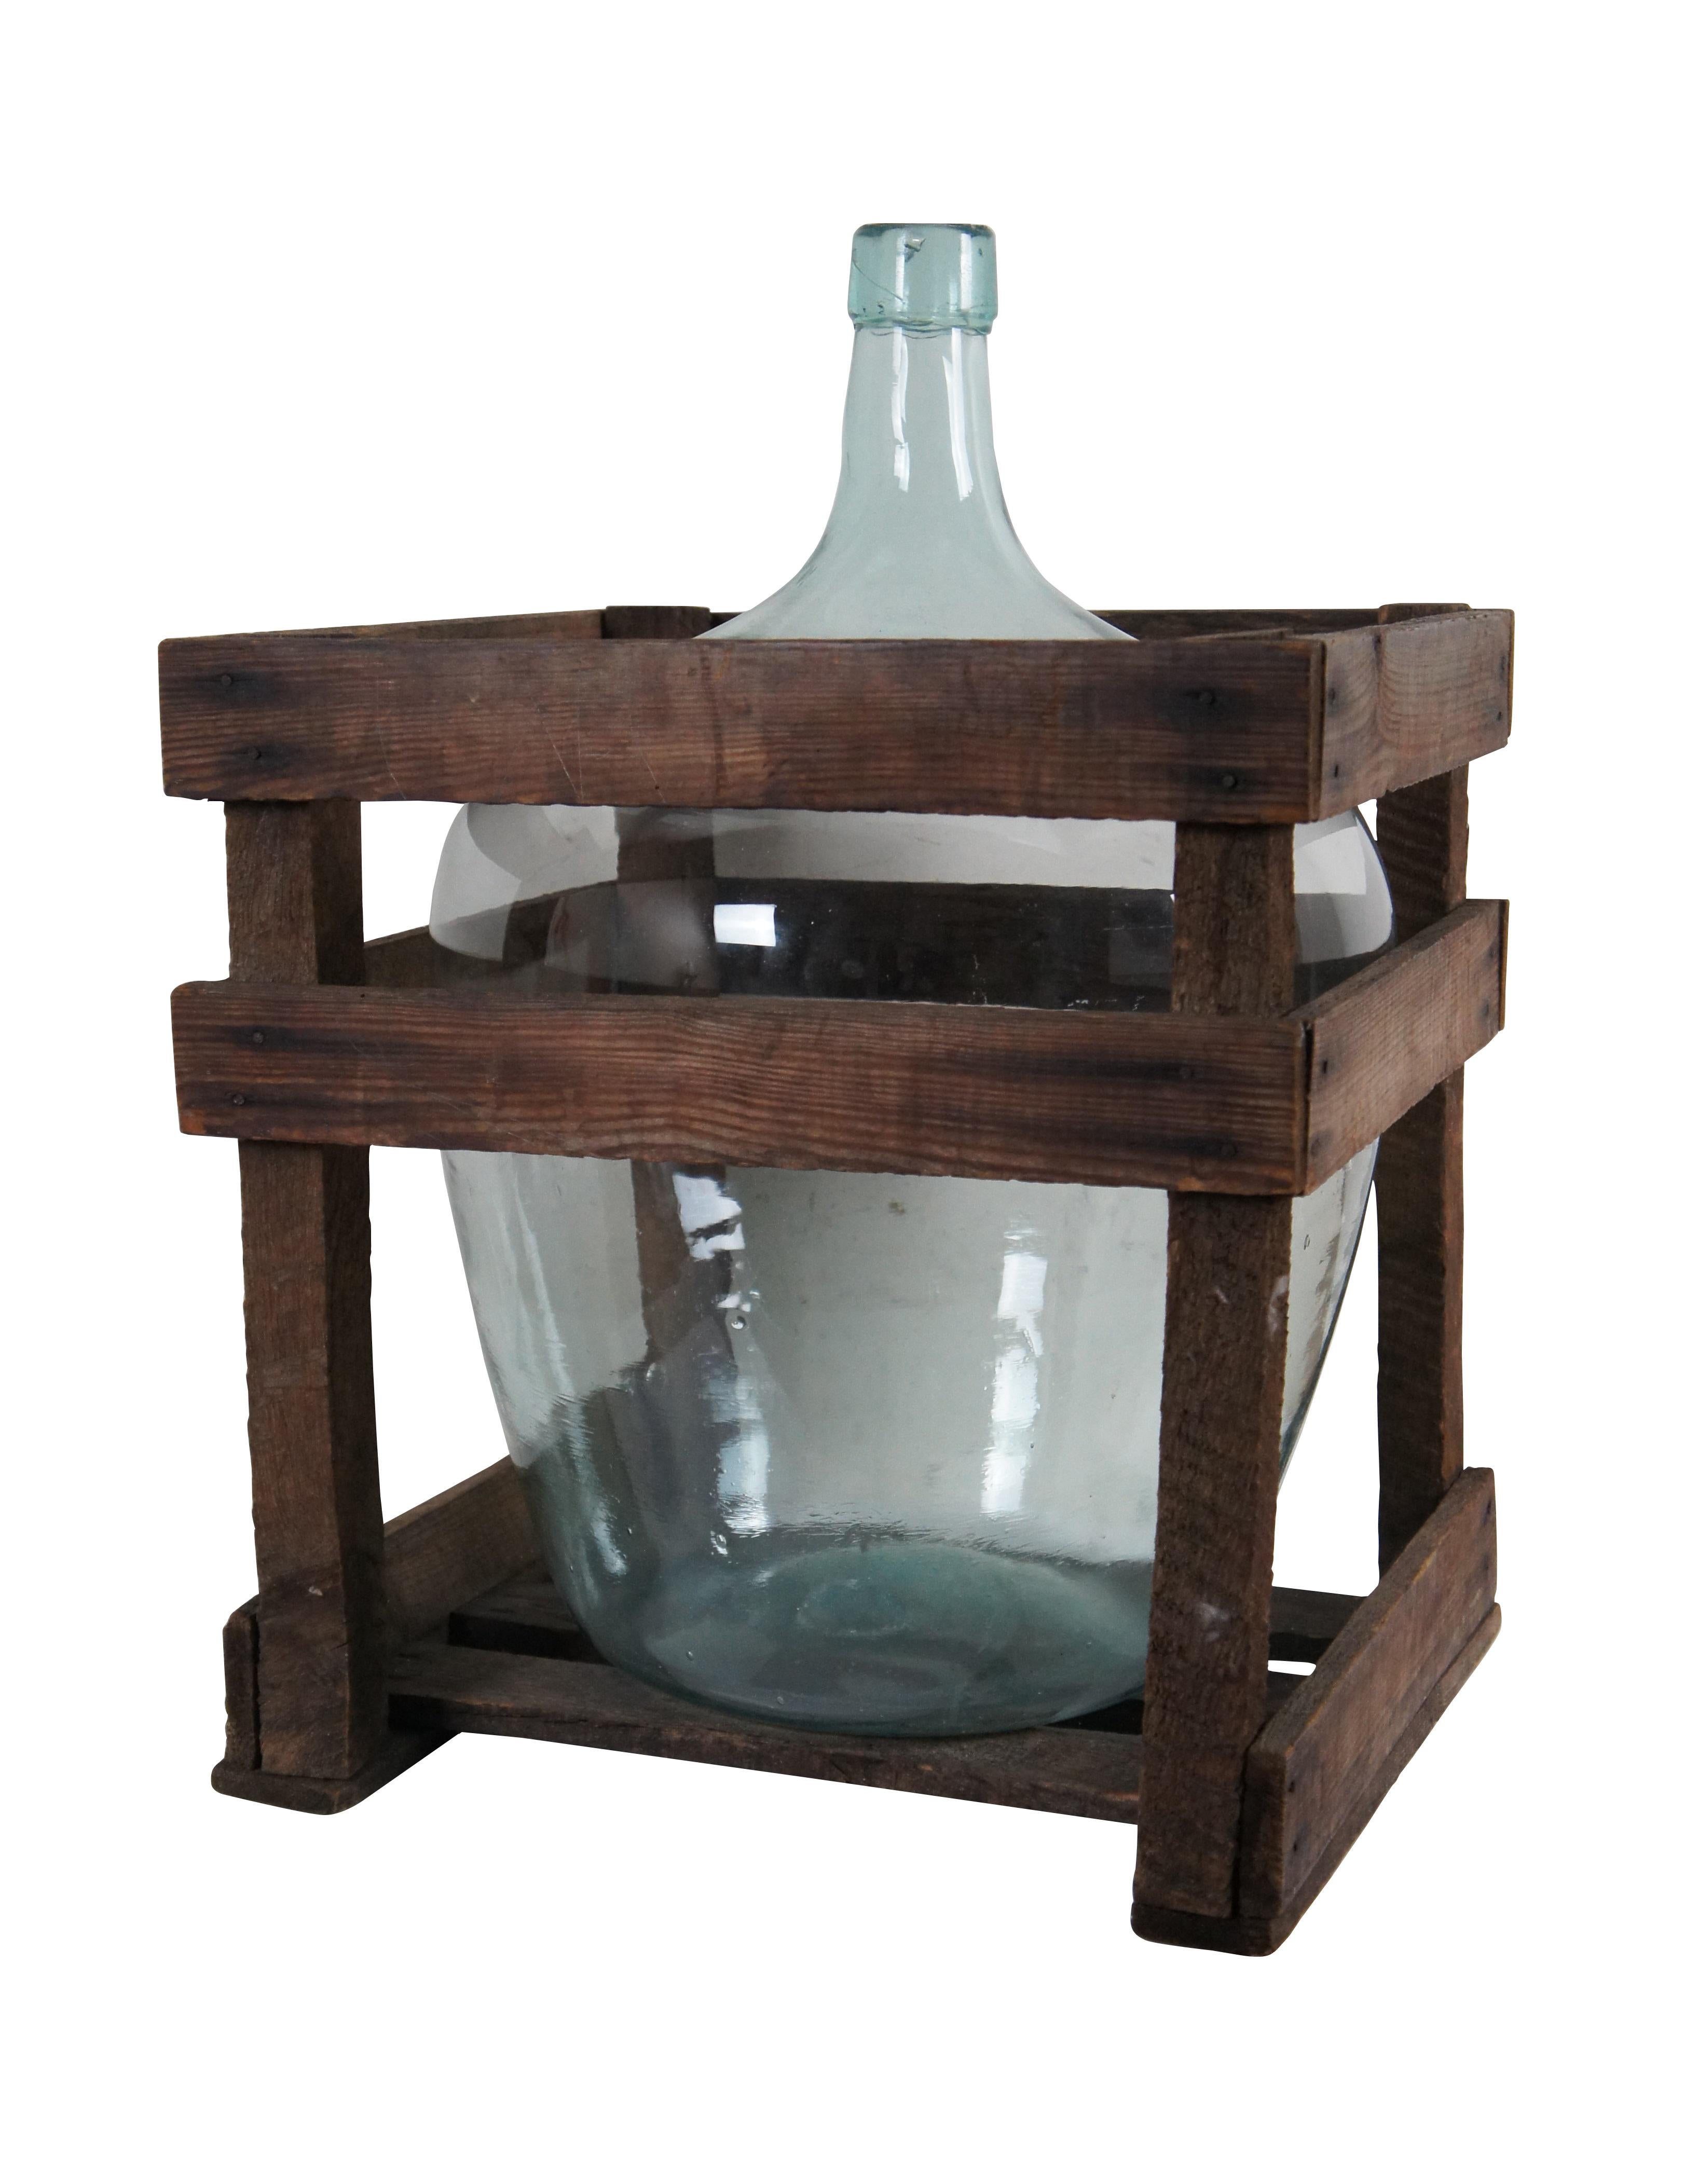 Antike blassblau / klar Glas demijohn Weinflasche / Krug und Holzlatten Lagerung Kiste.

Abmessungen:
Flasche - 14,5